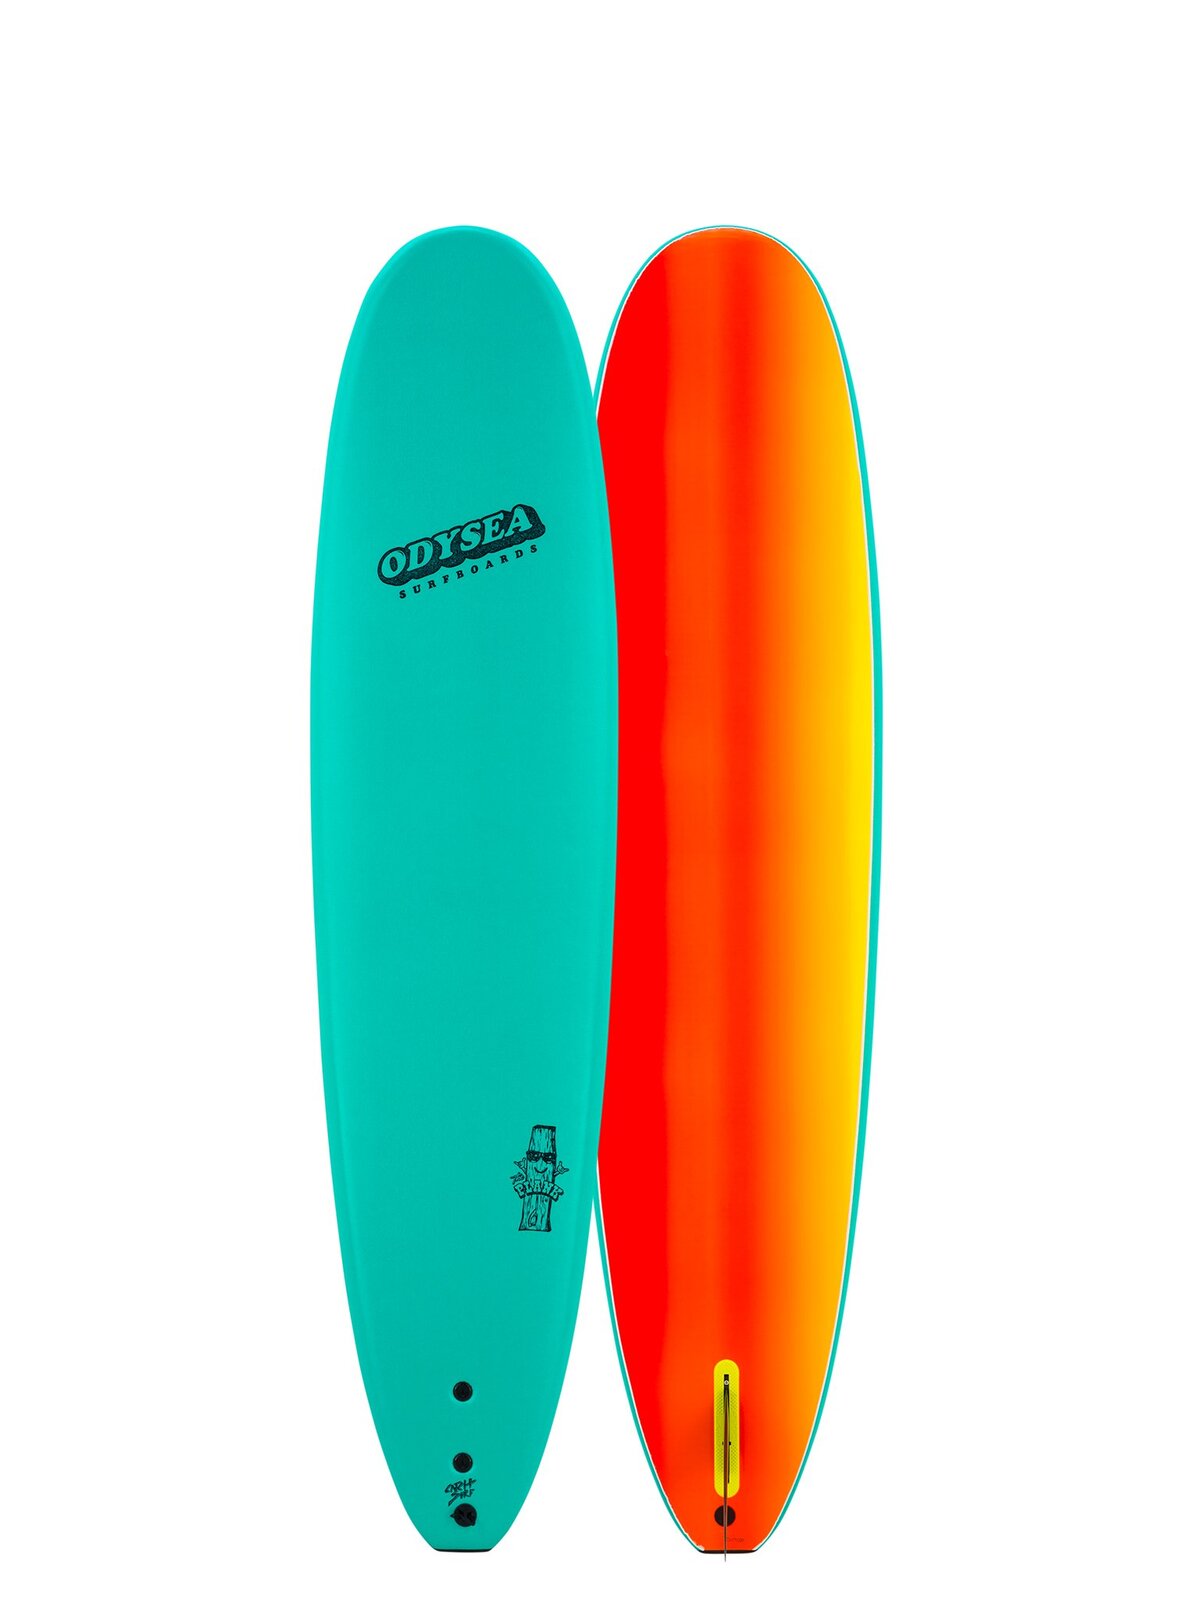 CATCH SURF Odysea Plank 8'0 Single Fin 2022/23 Model